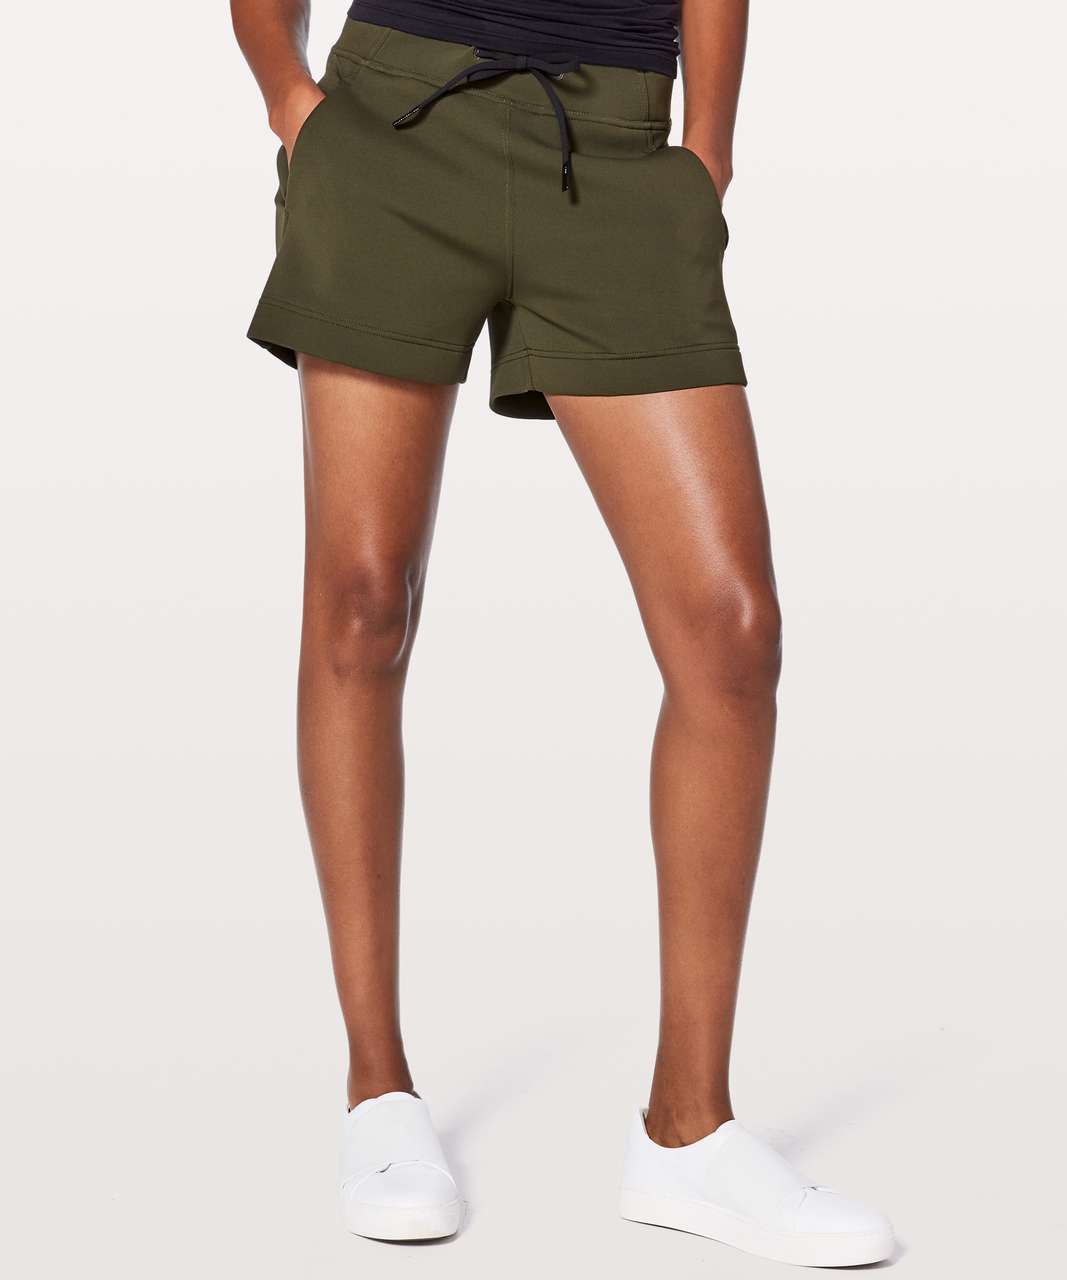 lululemon olive green shorts